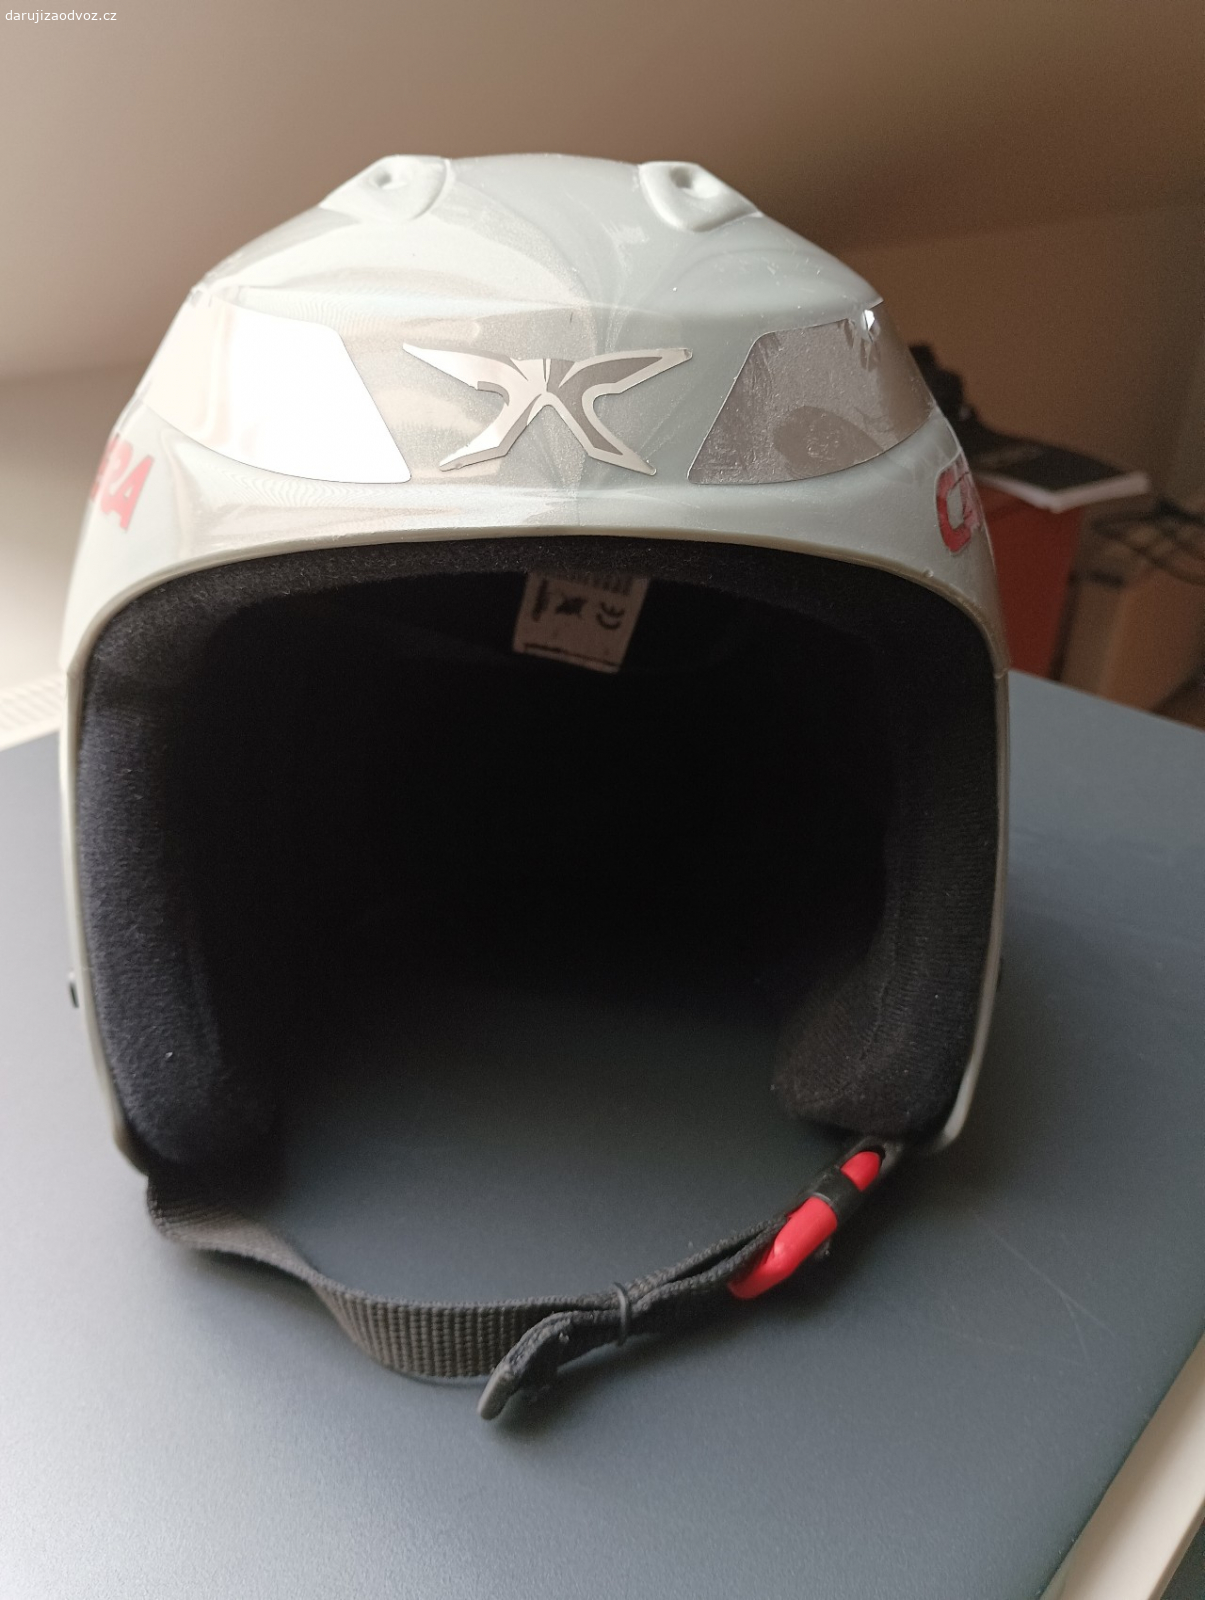 dětská lyžařská helma. starší, ale plně funkční čistá helma na hory. na obvod hlavy 59cm
předat možno i v Kladně, nebo Praha 1